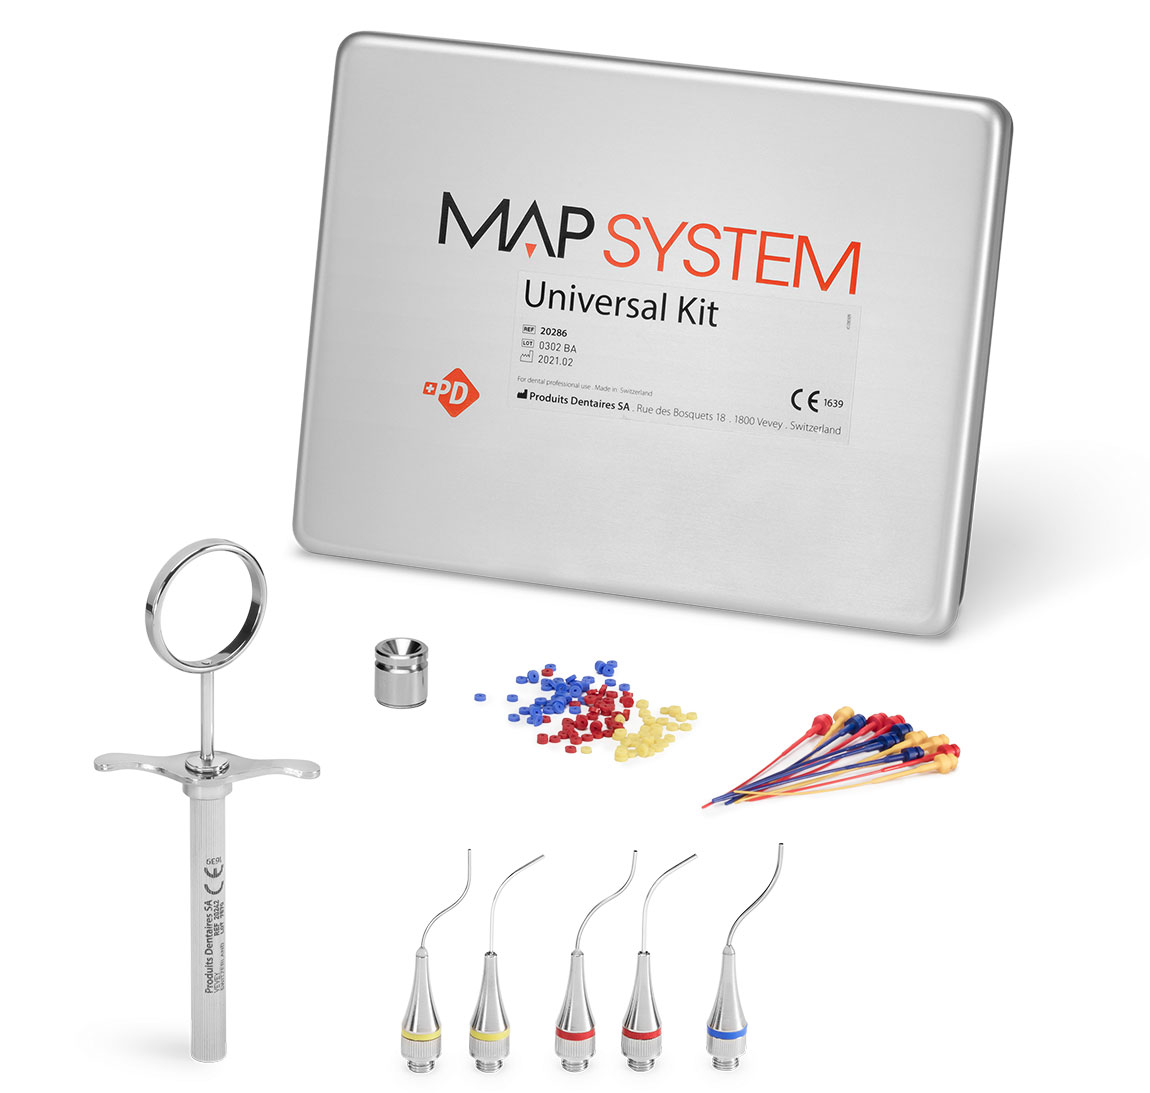 Acquistare i prodotti del MAP System Kit universale: testine endodontiche per il posizionamento di cementi nei canali radicolari